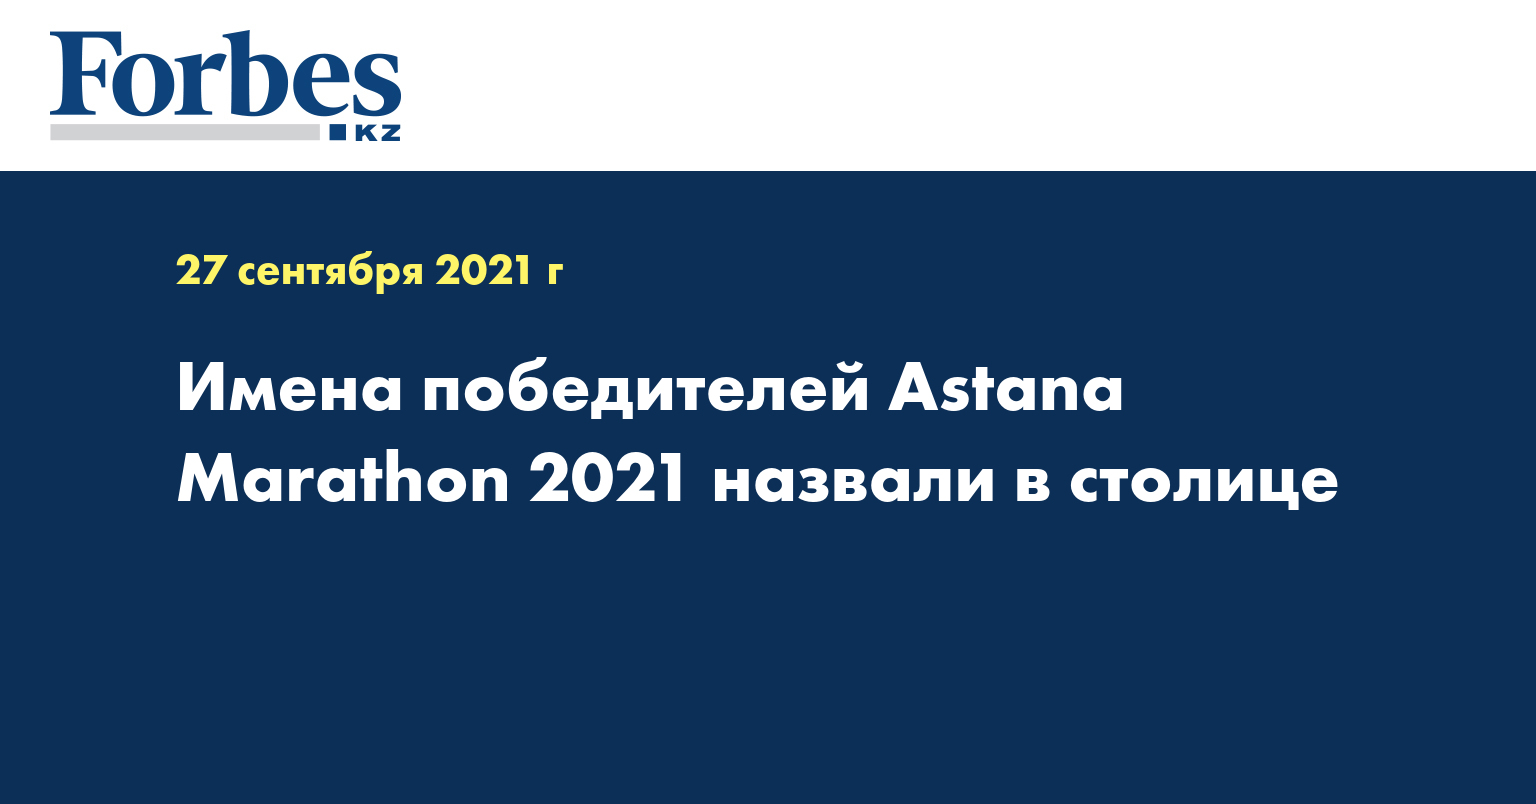 Имена победителей Astana Marathon 2021 назвали в столице